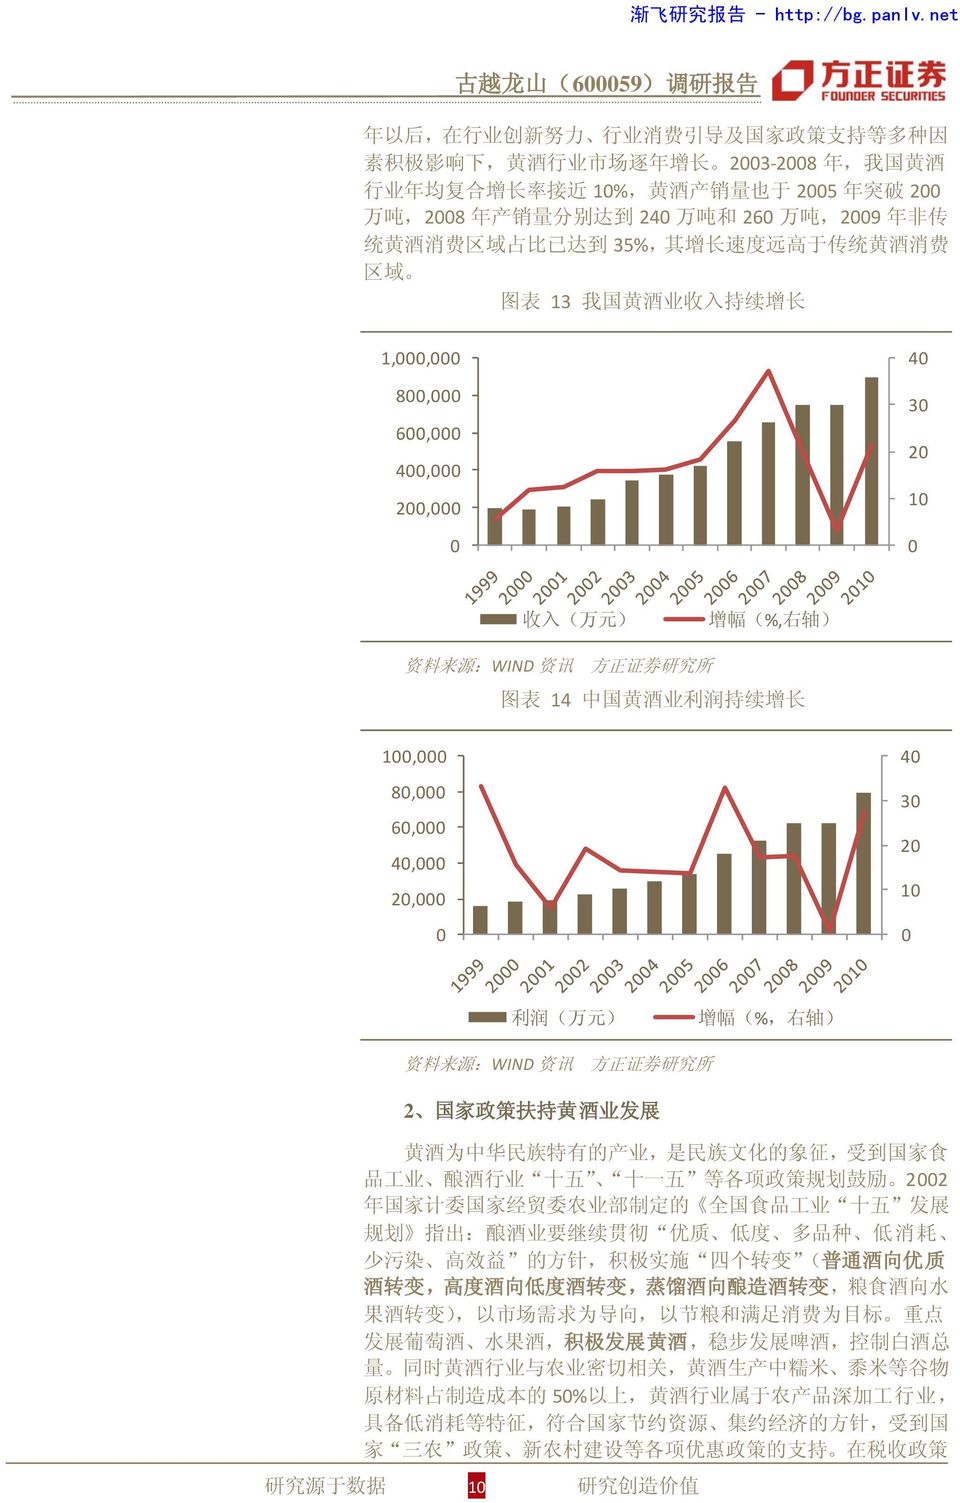 源 :WIND 资 讯 图 表 14 中 国 黄 酒 业 利 润 持 续 增 长 100,000 80,000 60,000 40,000 20,000 0 40 30 20 10 0 利 润 ( 万 元 ) 增 幅 (%, 右 轴 ) 资 料 来 源 :WIND 资 讯 2 国 家 政 策 扶 持 黄 酒 业 发 展 黄 酒 为 中 华 民 族 特 有 的 产 业, 是 民 族 文 化 的 象